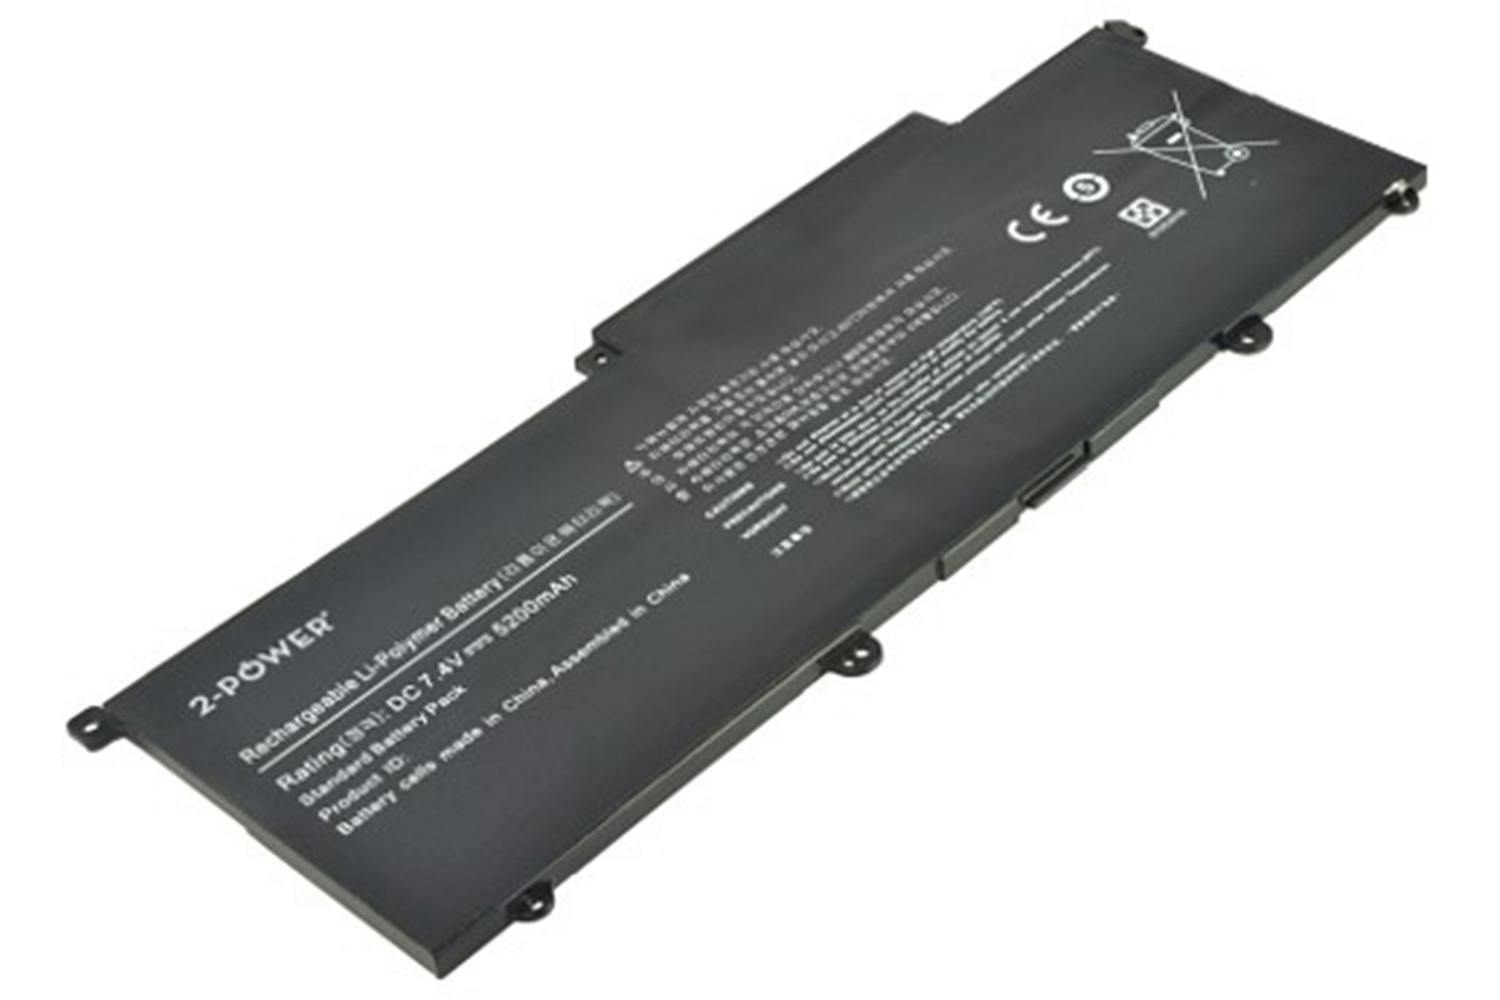 2-Power Main Battery Pack 7.4V 5200mAh